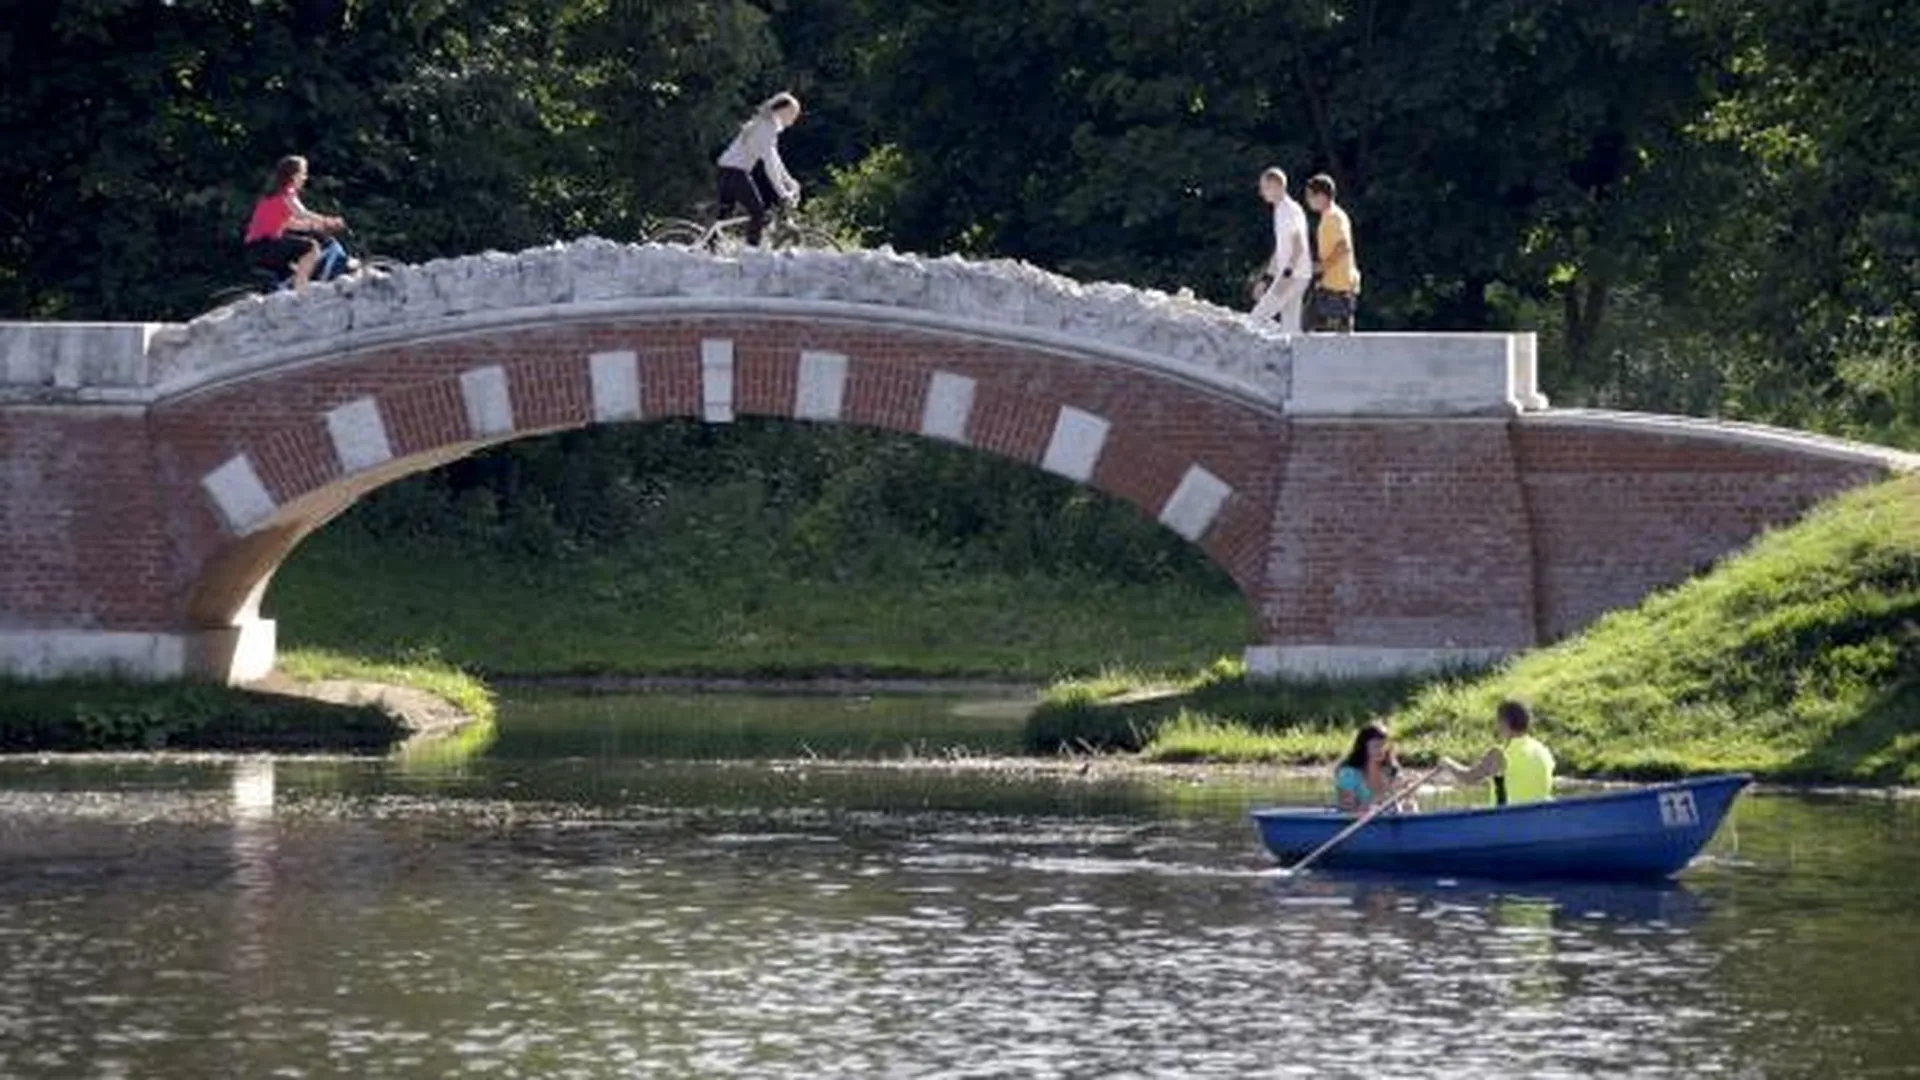 Систему очистки воды установили в Щучьем пруду в парке «Кузьминки» в Москве